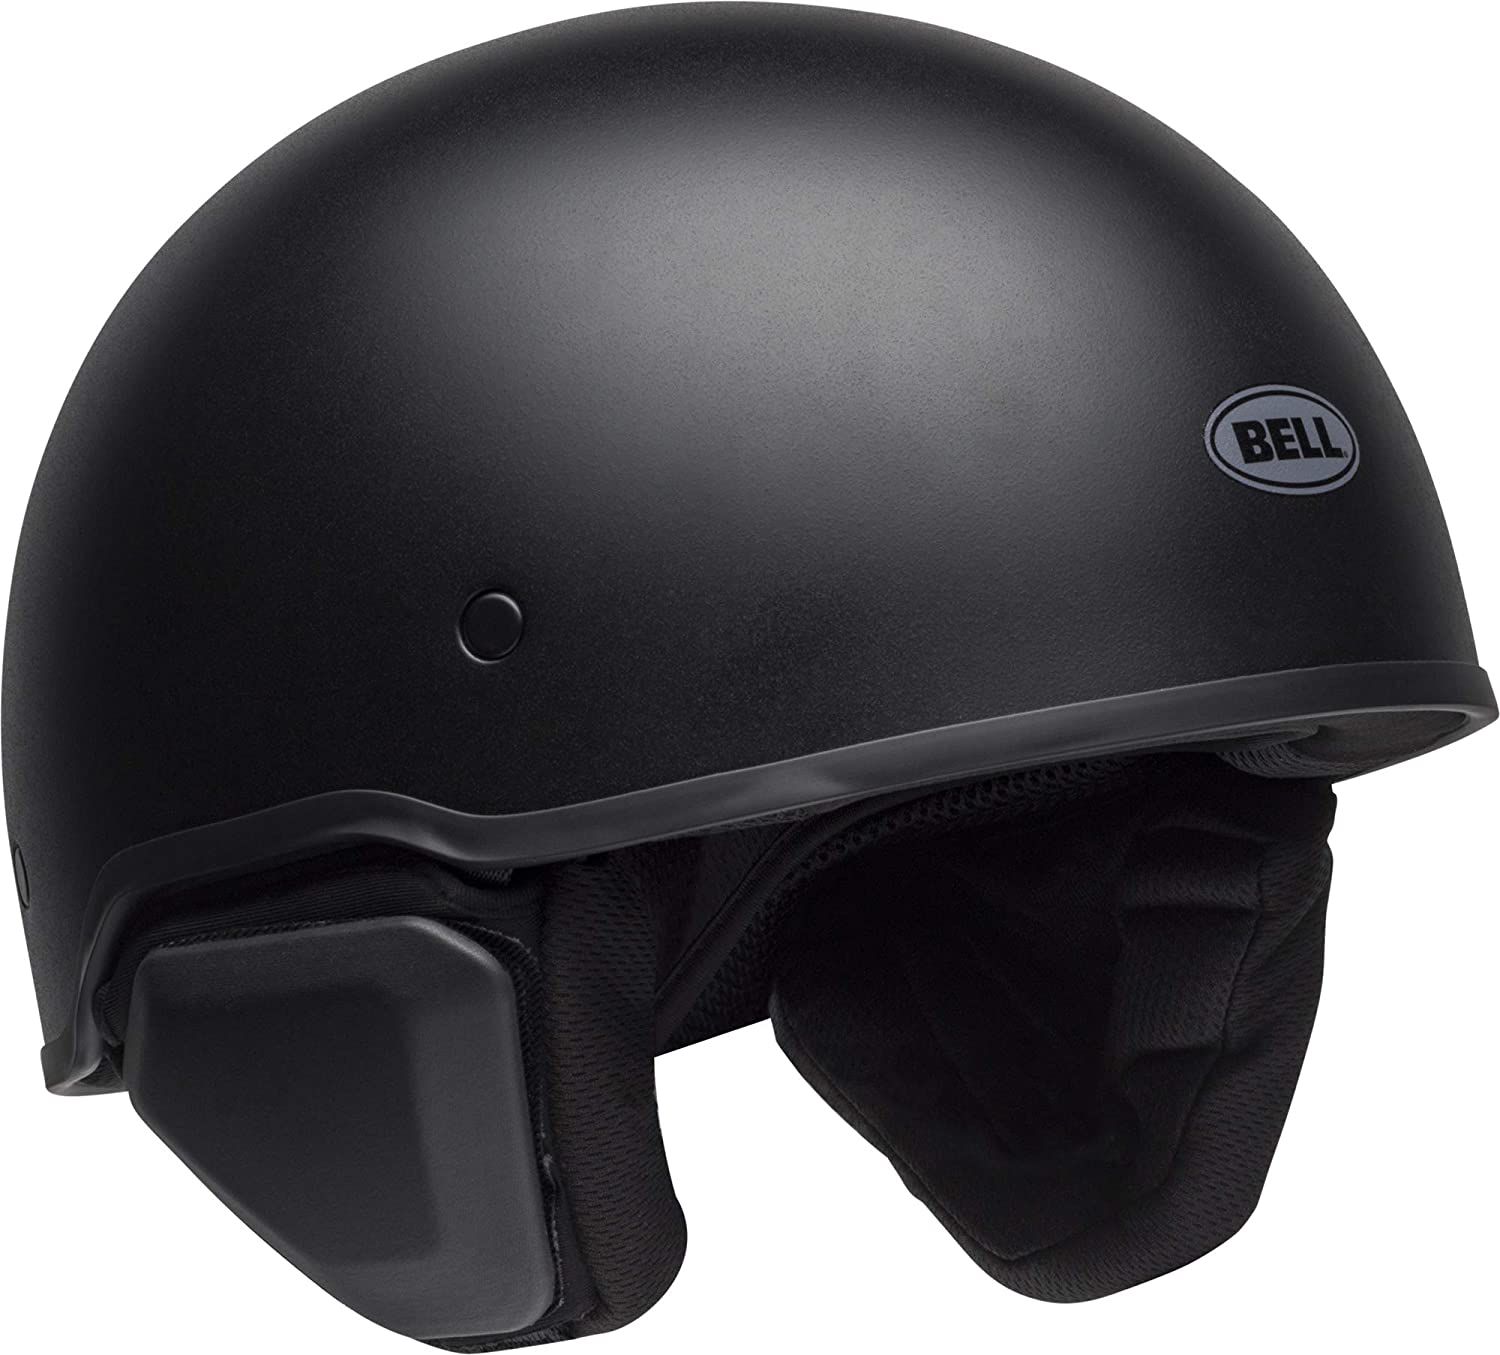 Bell Recon Helmet Review